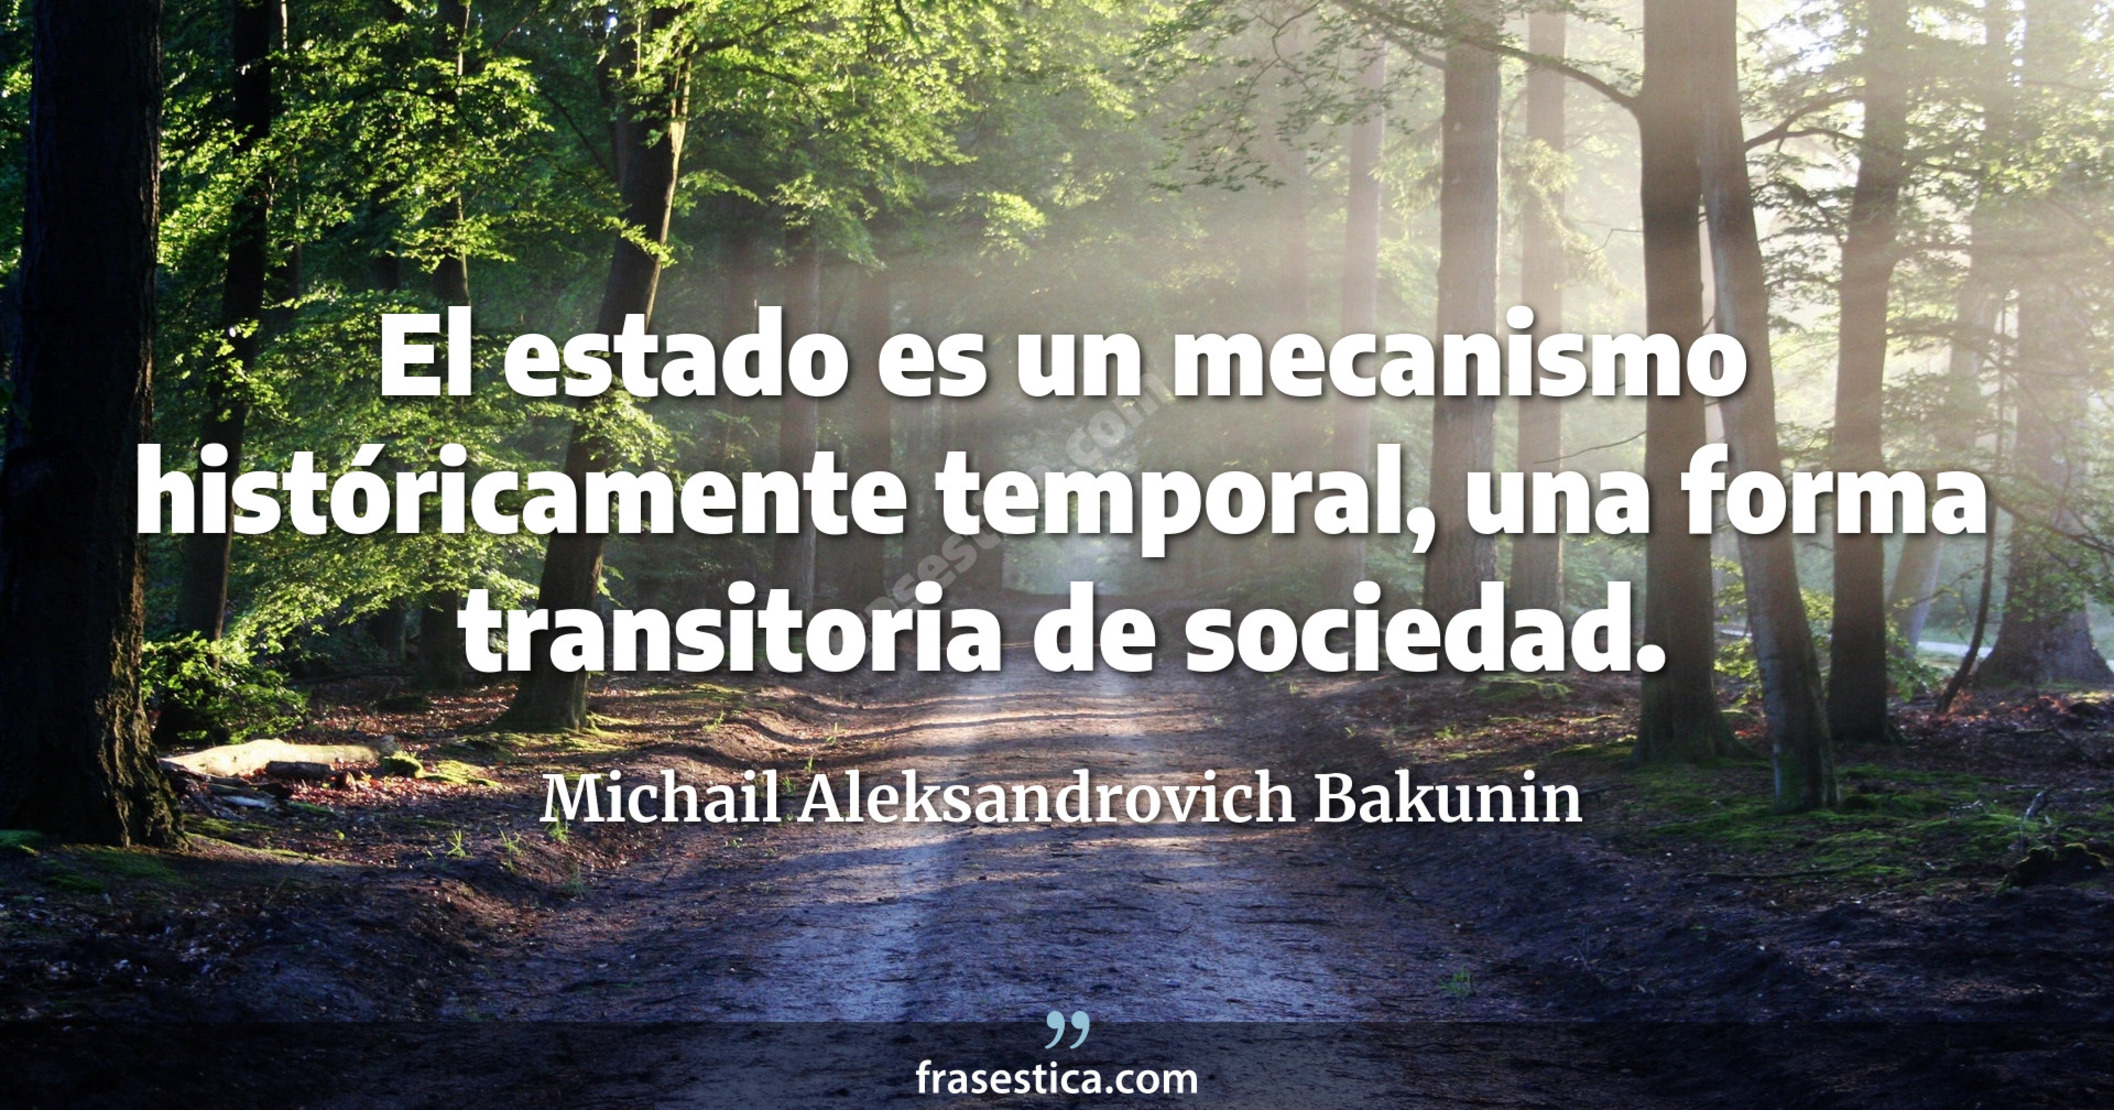 El estado es un mecanismo históricamente temporal, una forma transitoria de sociedad. - Michail Aleksandrovich Bakunin